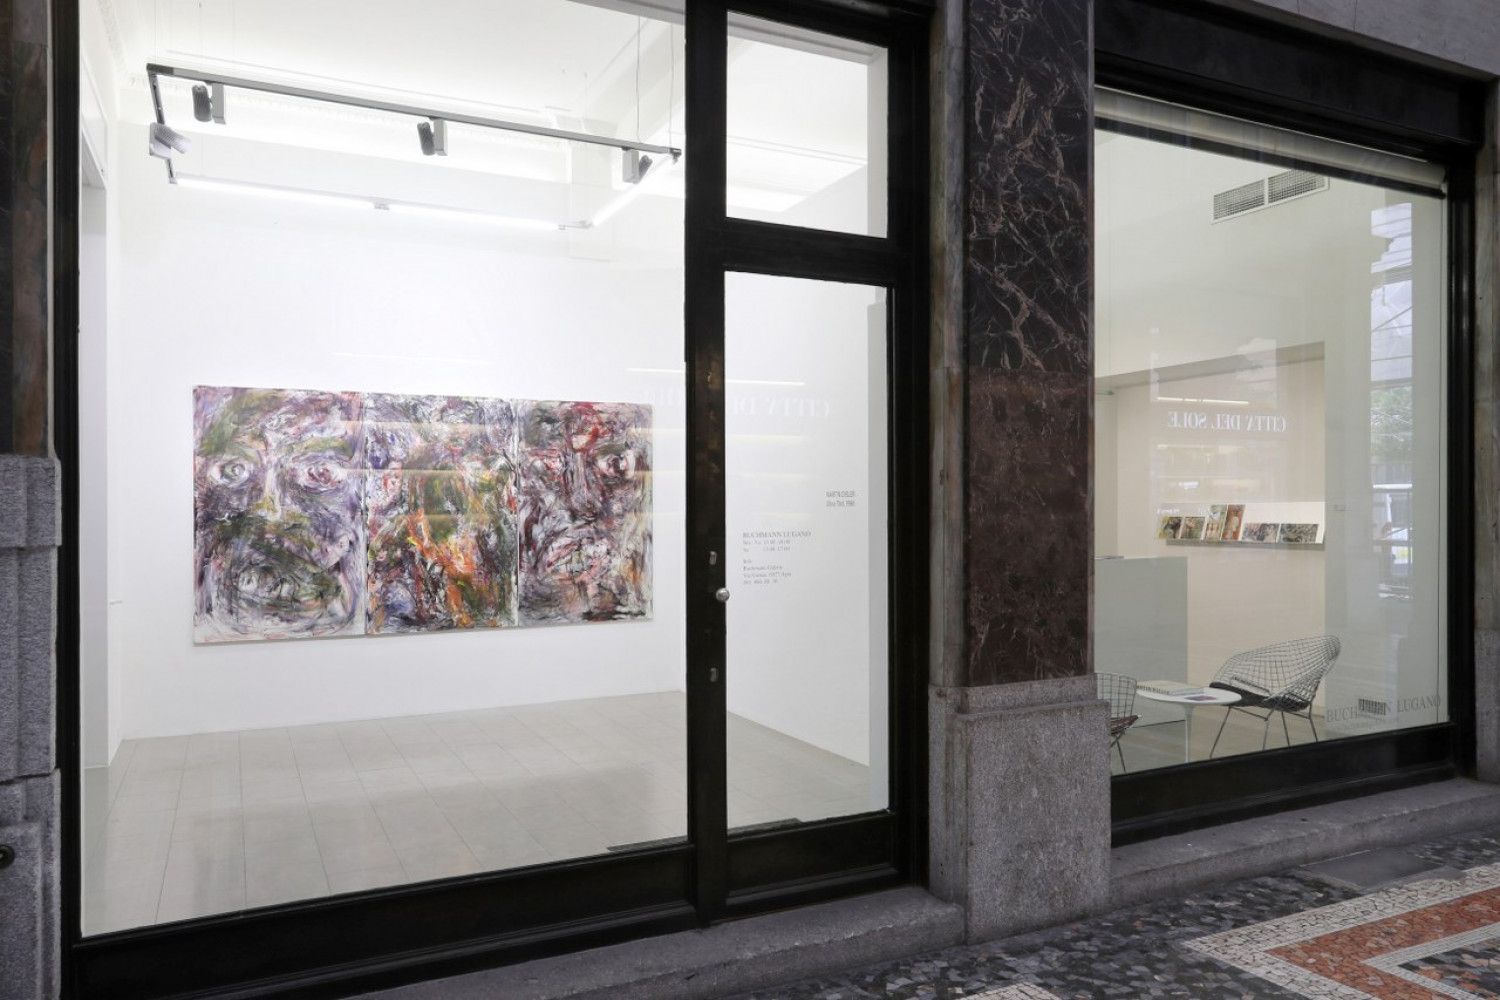 The Estate of Martin Disler, ‘Martin Disler – Un trittico’, Installation view, Buchmann Lugano, 2016